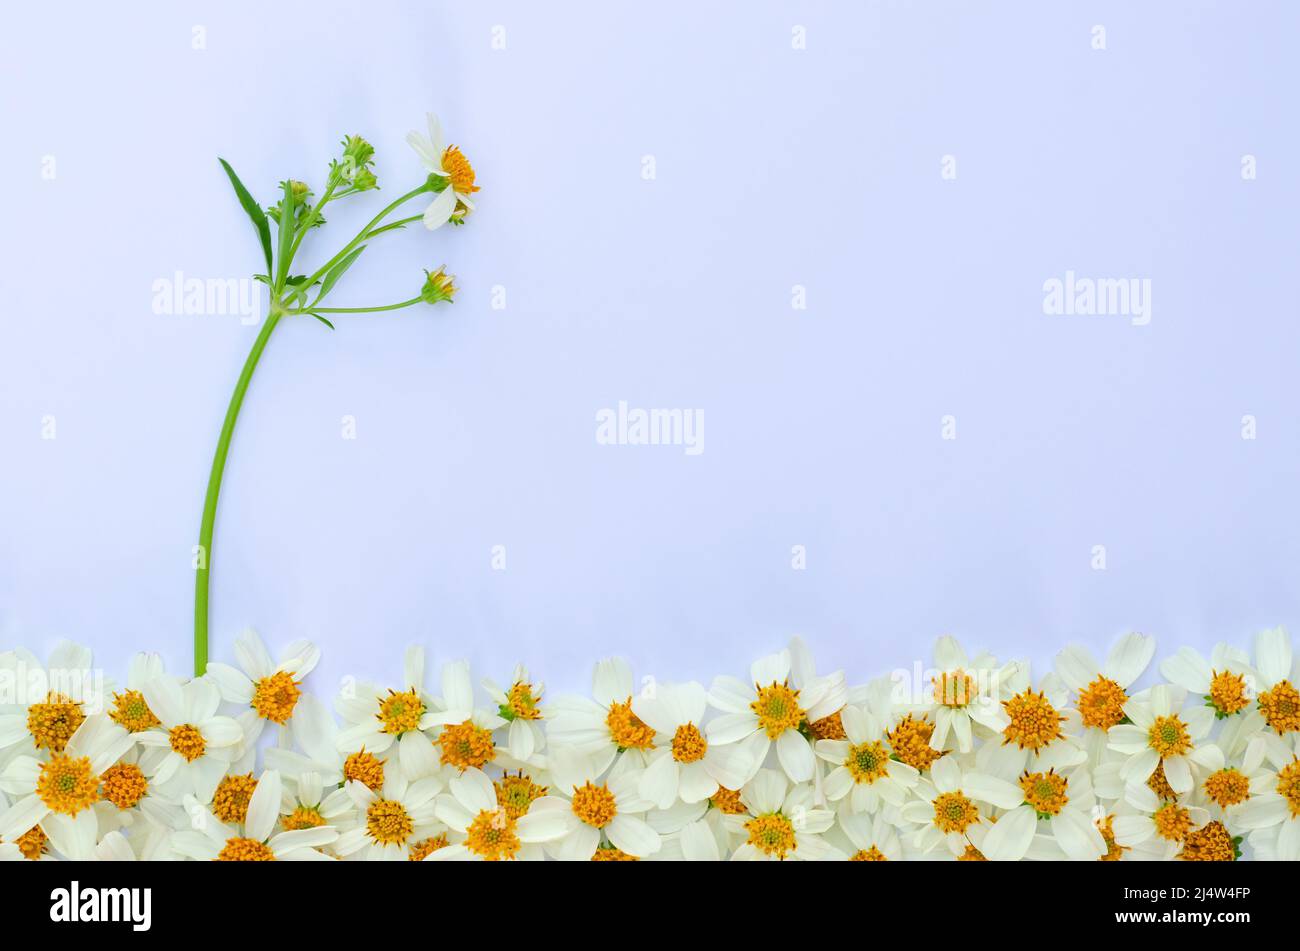 Aghi spagnoli o fiori di erba di Bidens con il suo albero e foglie su sfondo di papar bianco. Foto Stock